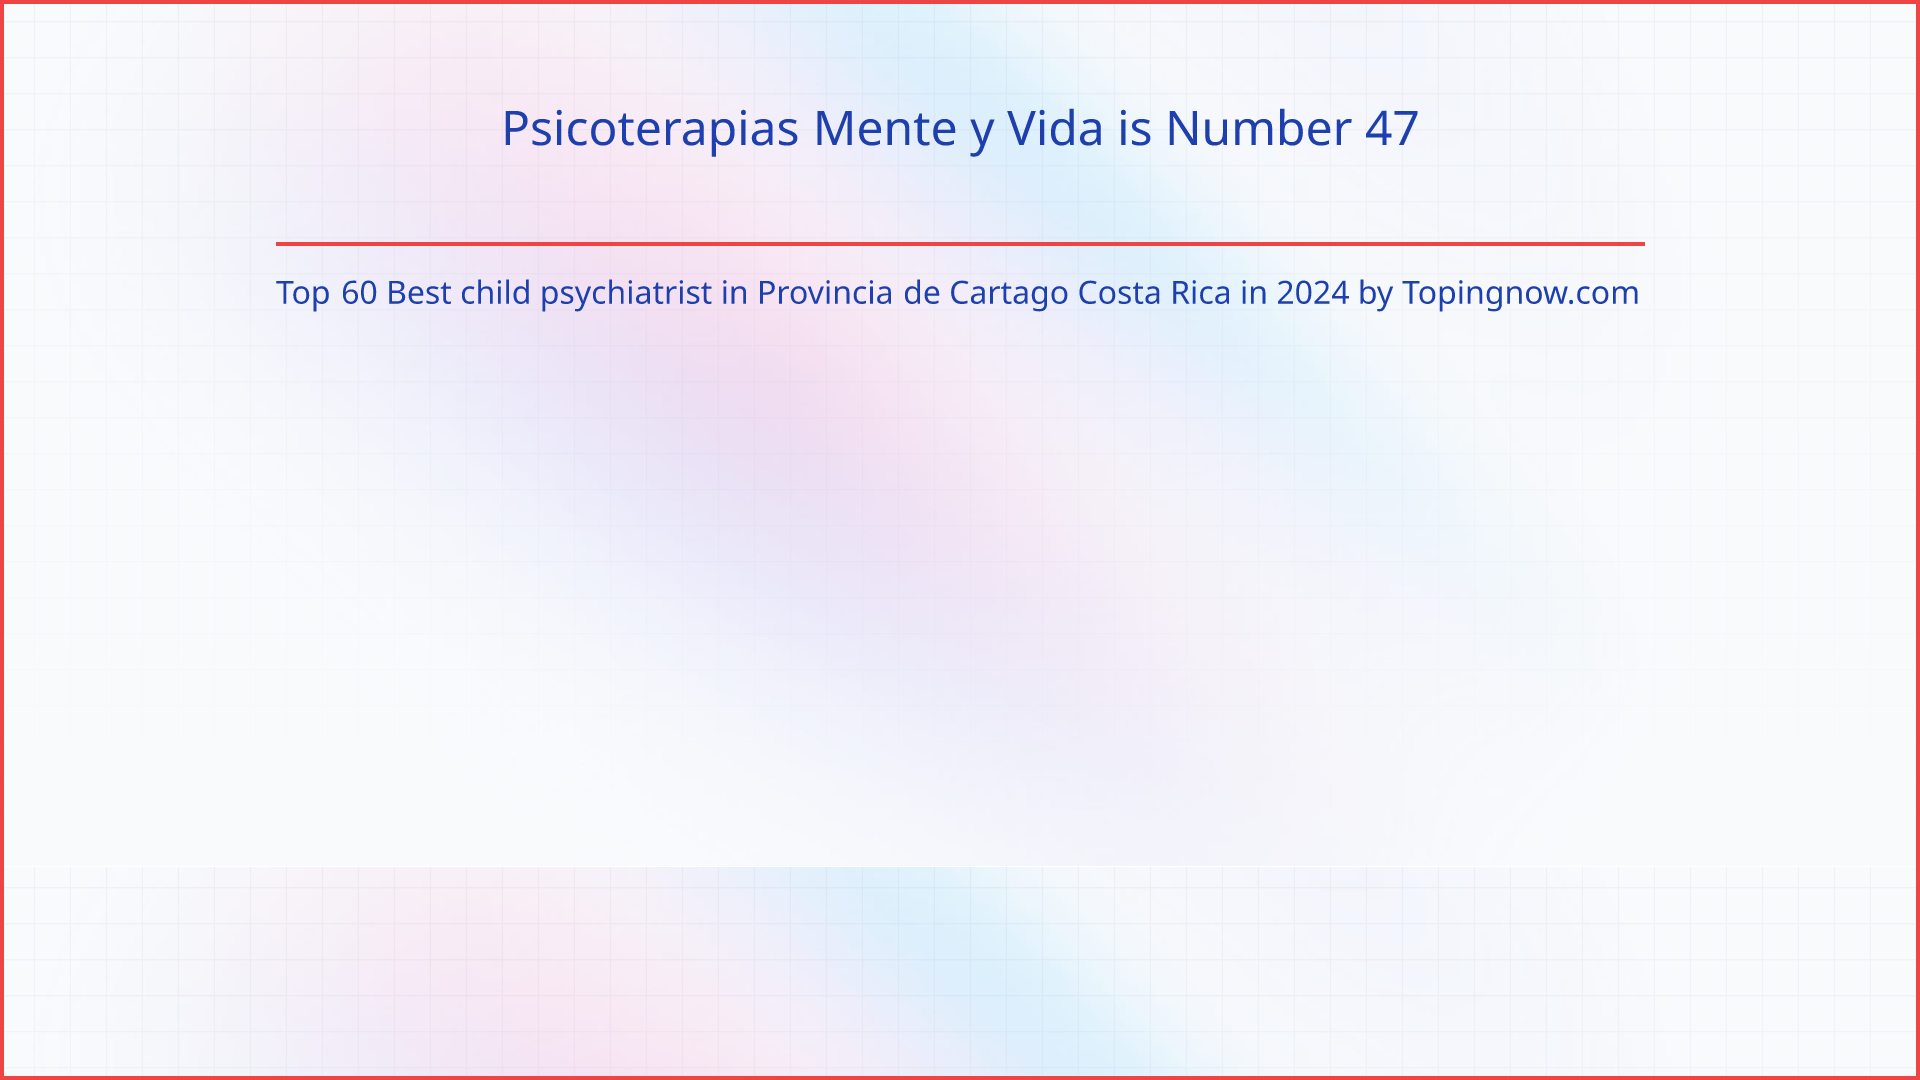 Psicoterapias Mente y Vida: Top 60 Best child psychiatrist in Provincia de Cartago Costa Rica in 2024